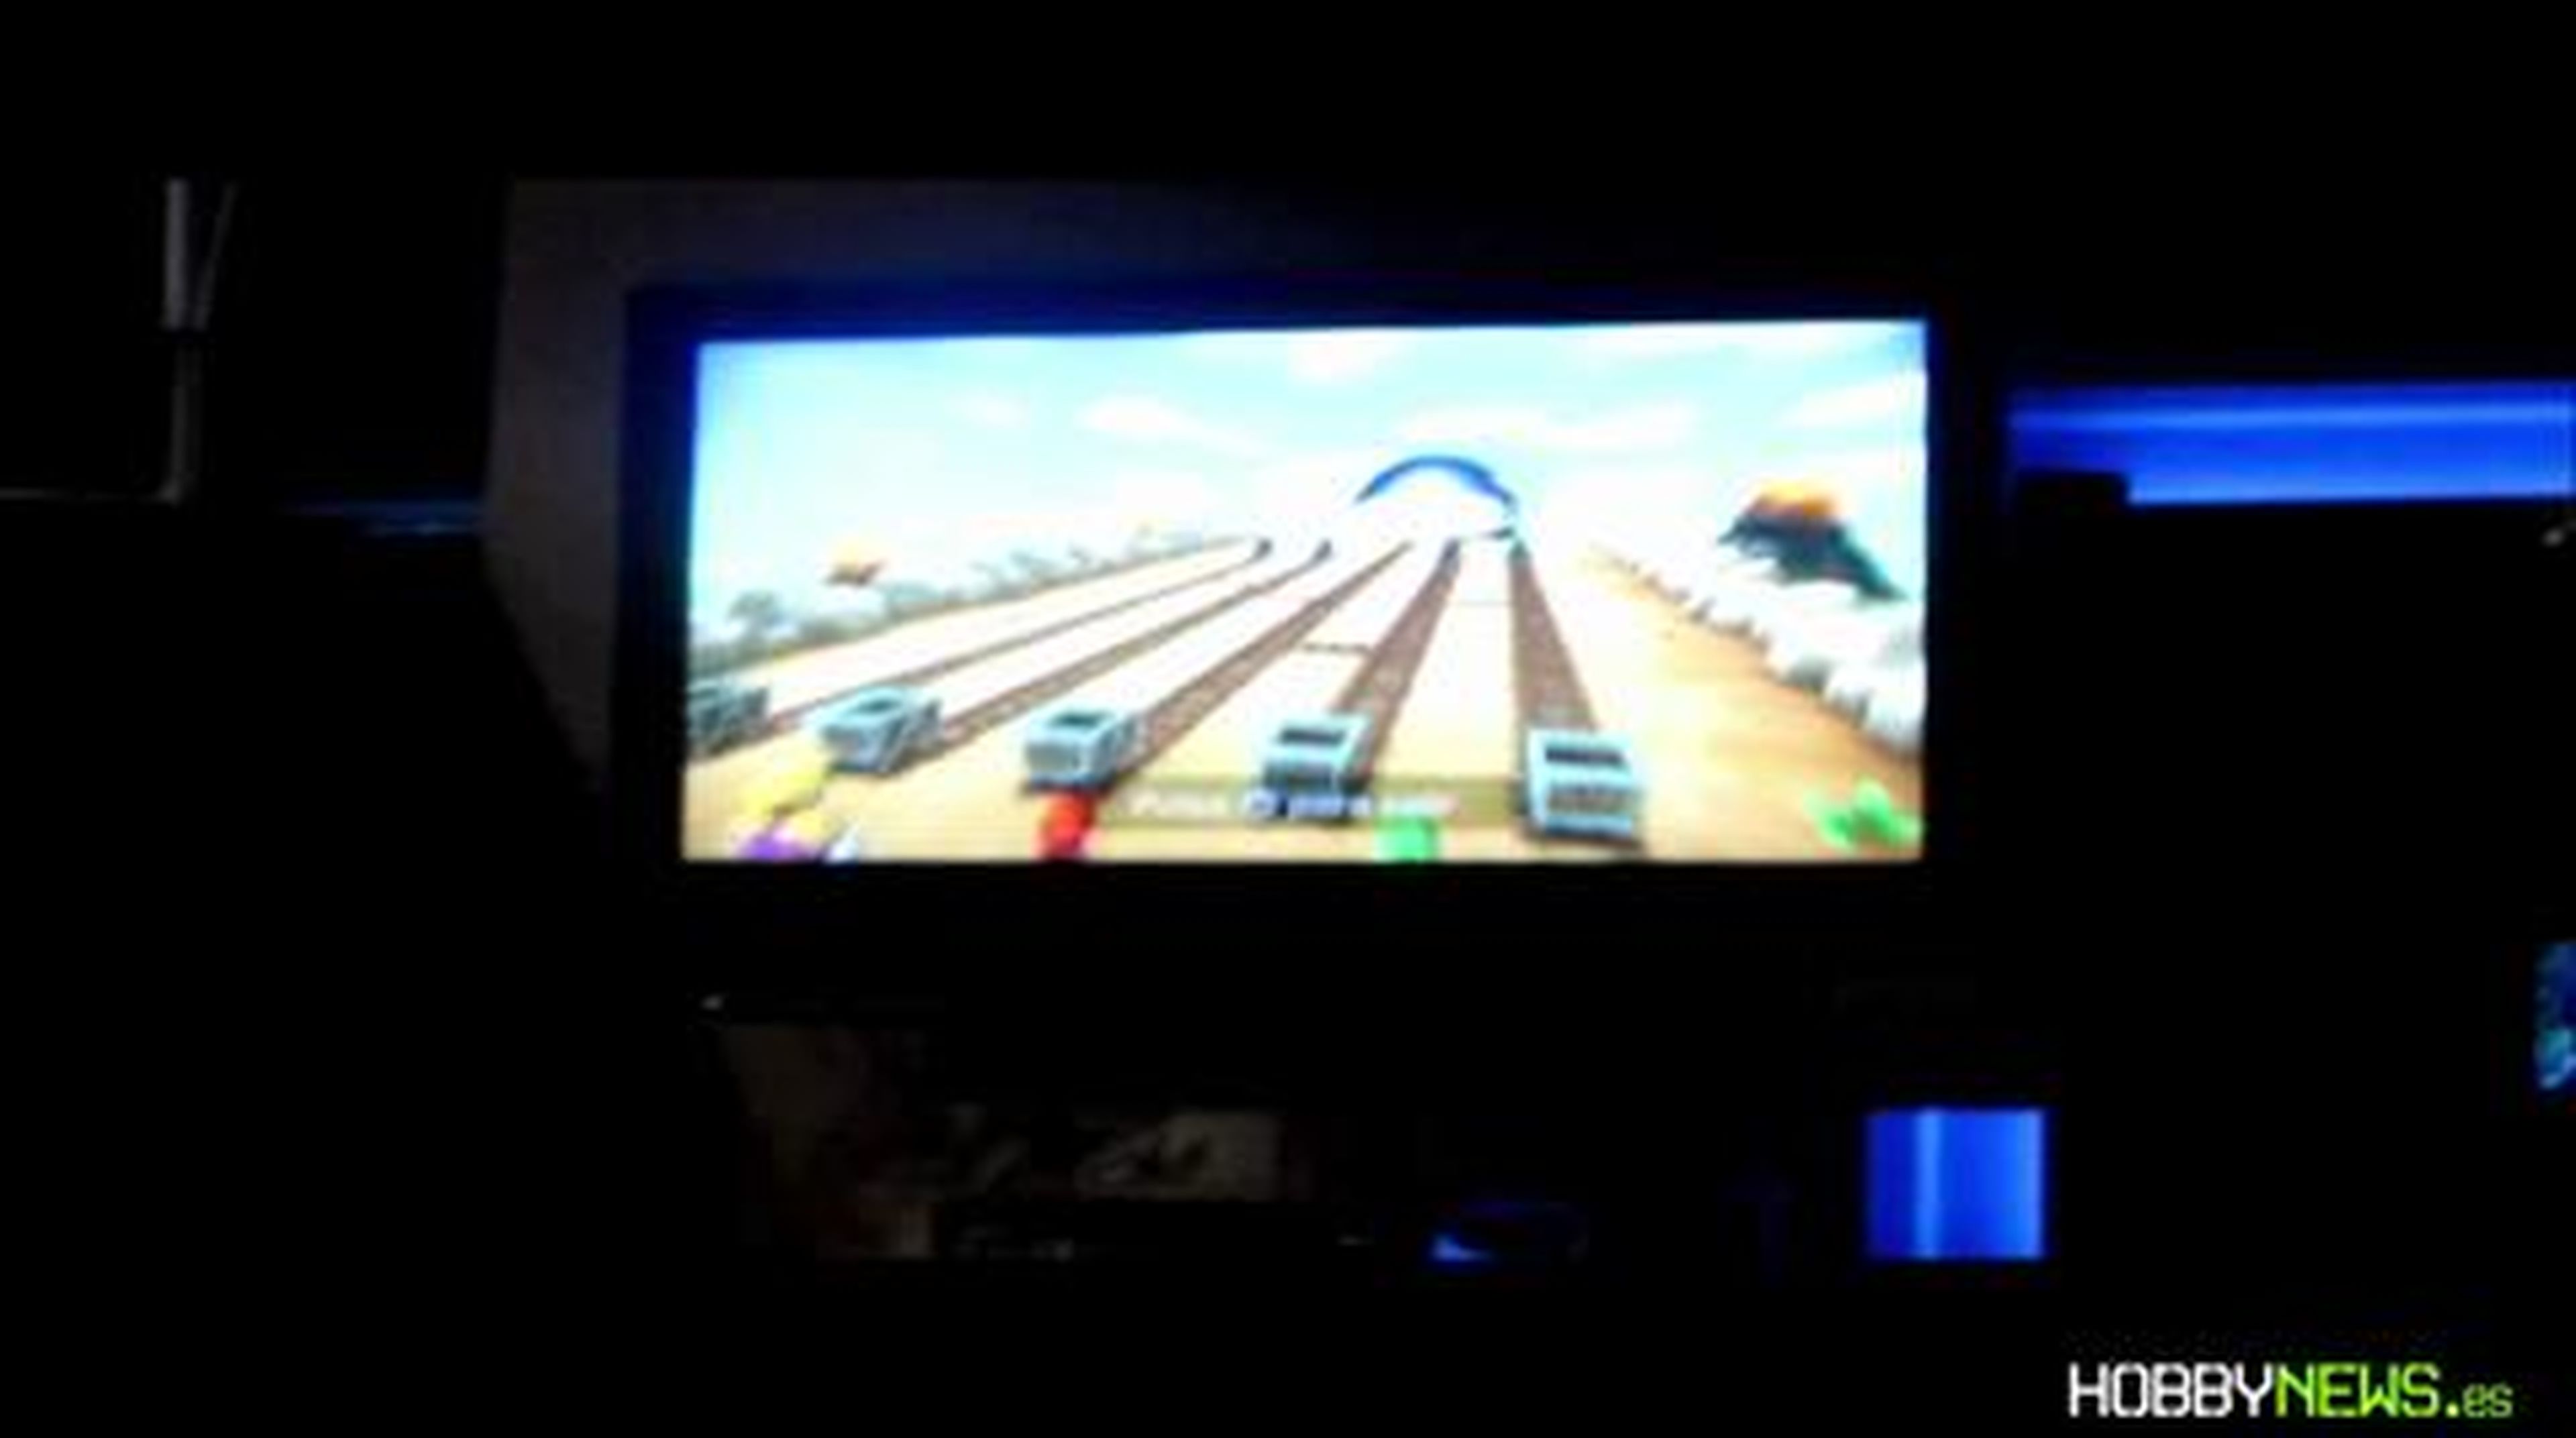 Mario Party 9 (HD) Torneo en HobbyNews.es